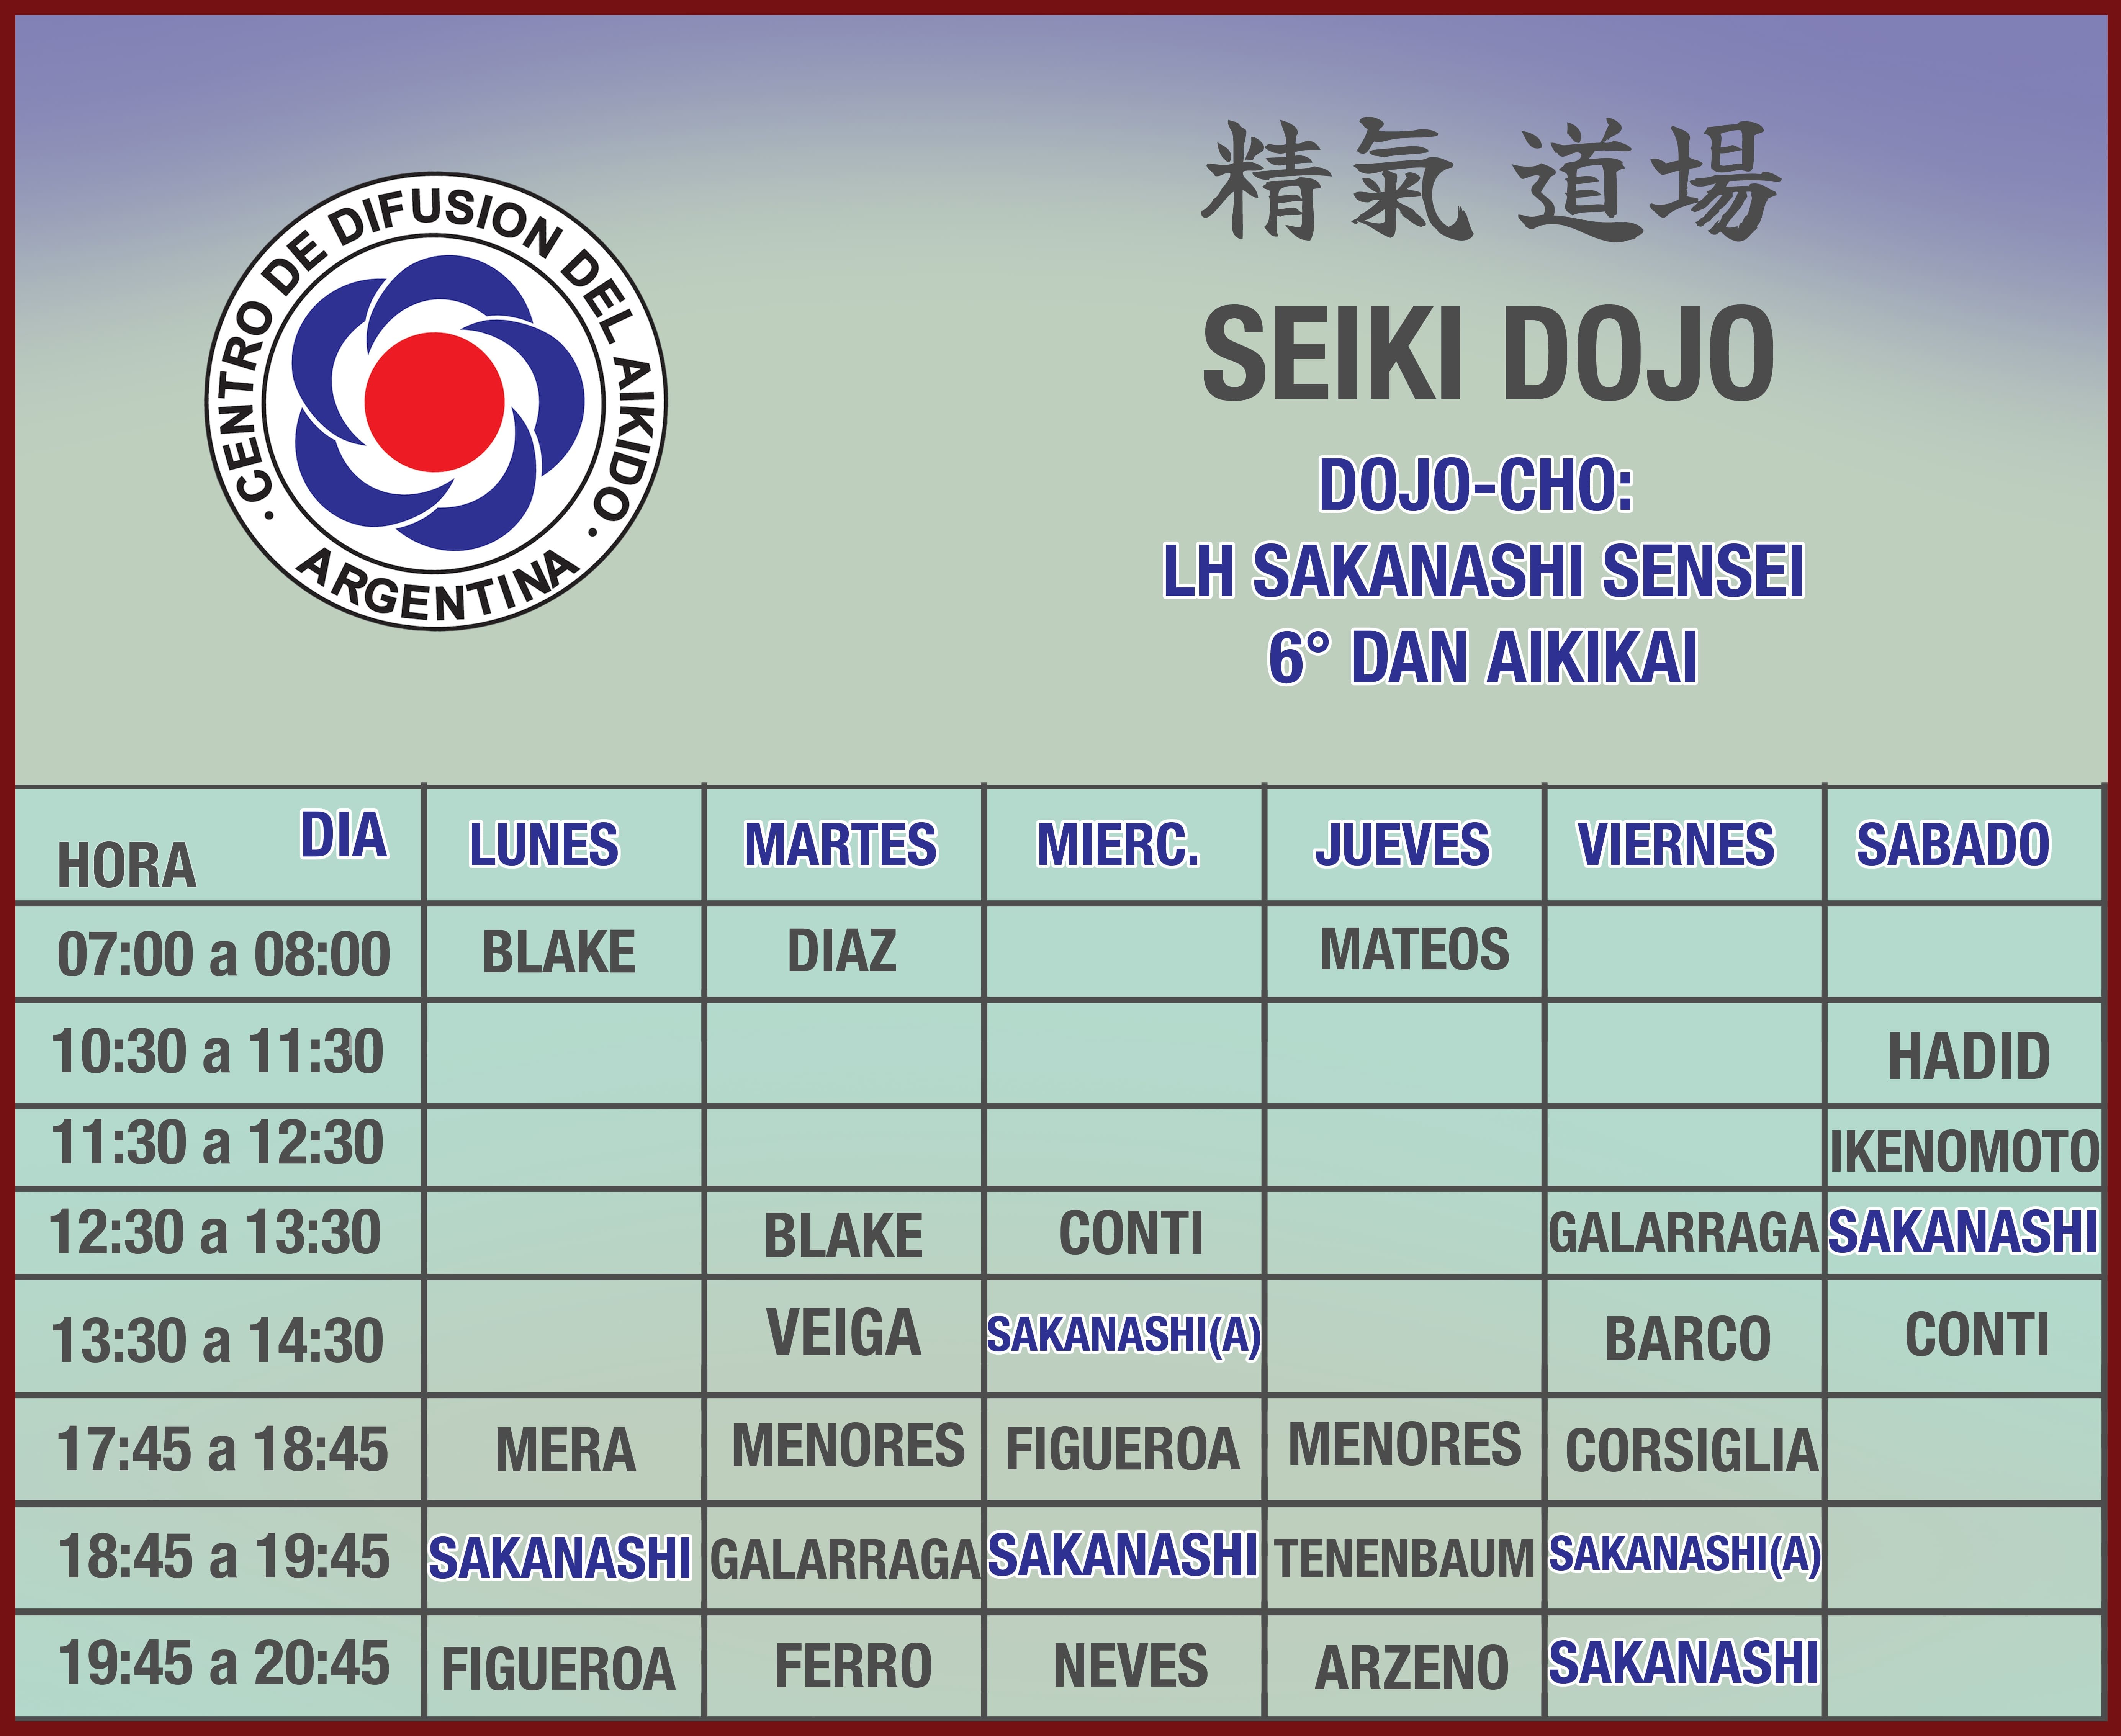 Imagen de los horarios de Seiki dojo